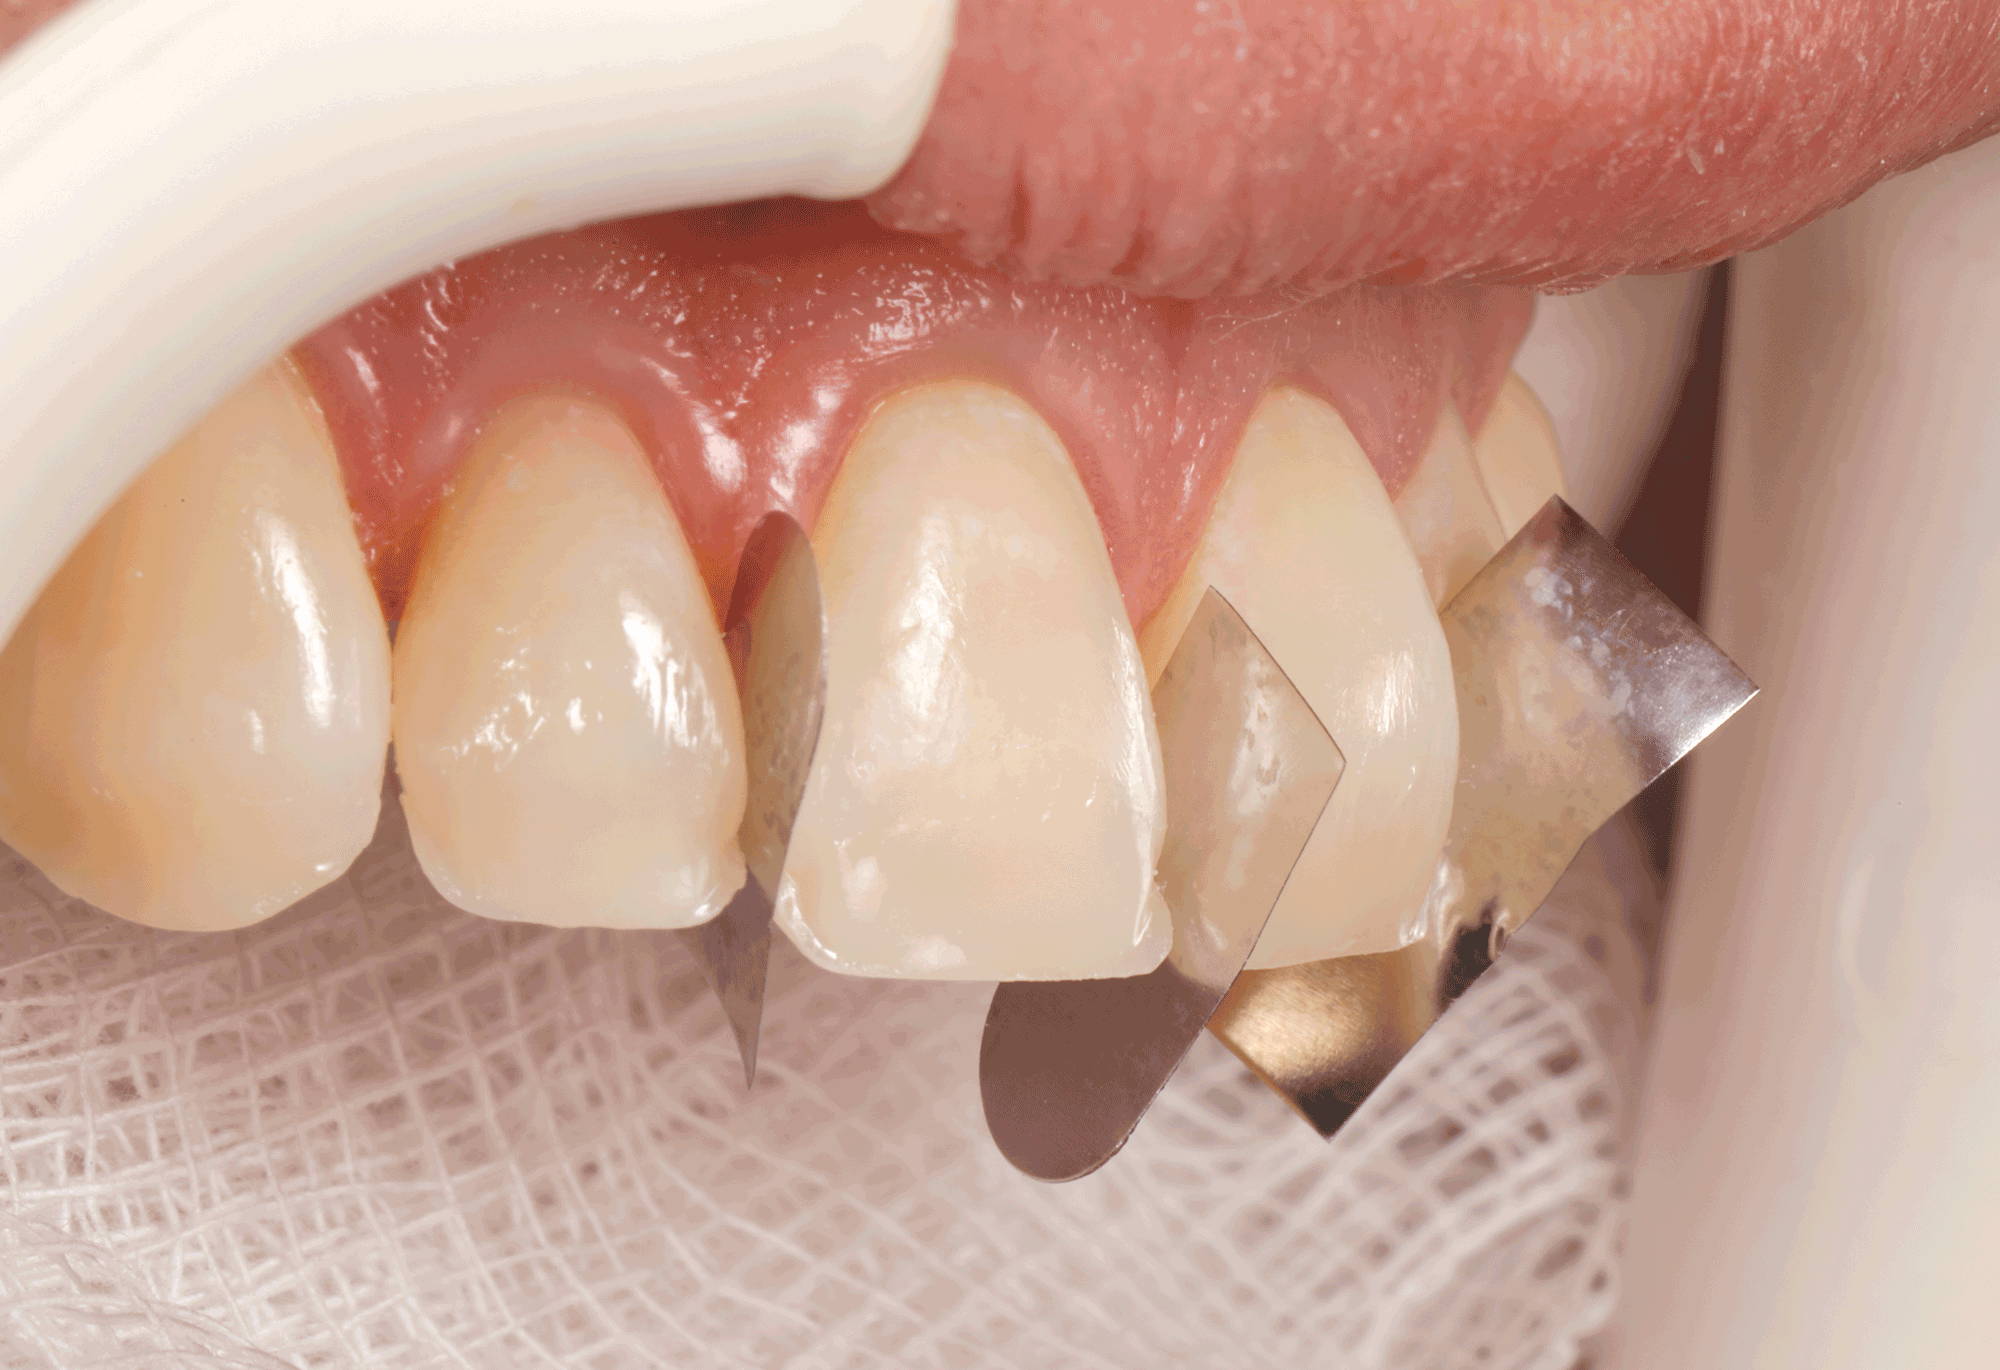 upper teeth with metal pieces in between